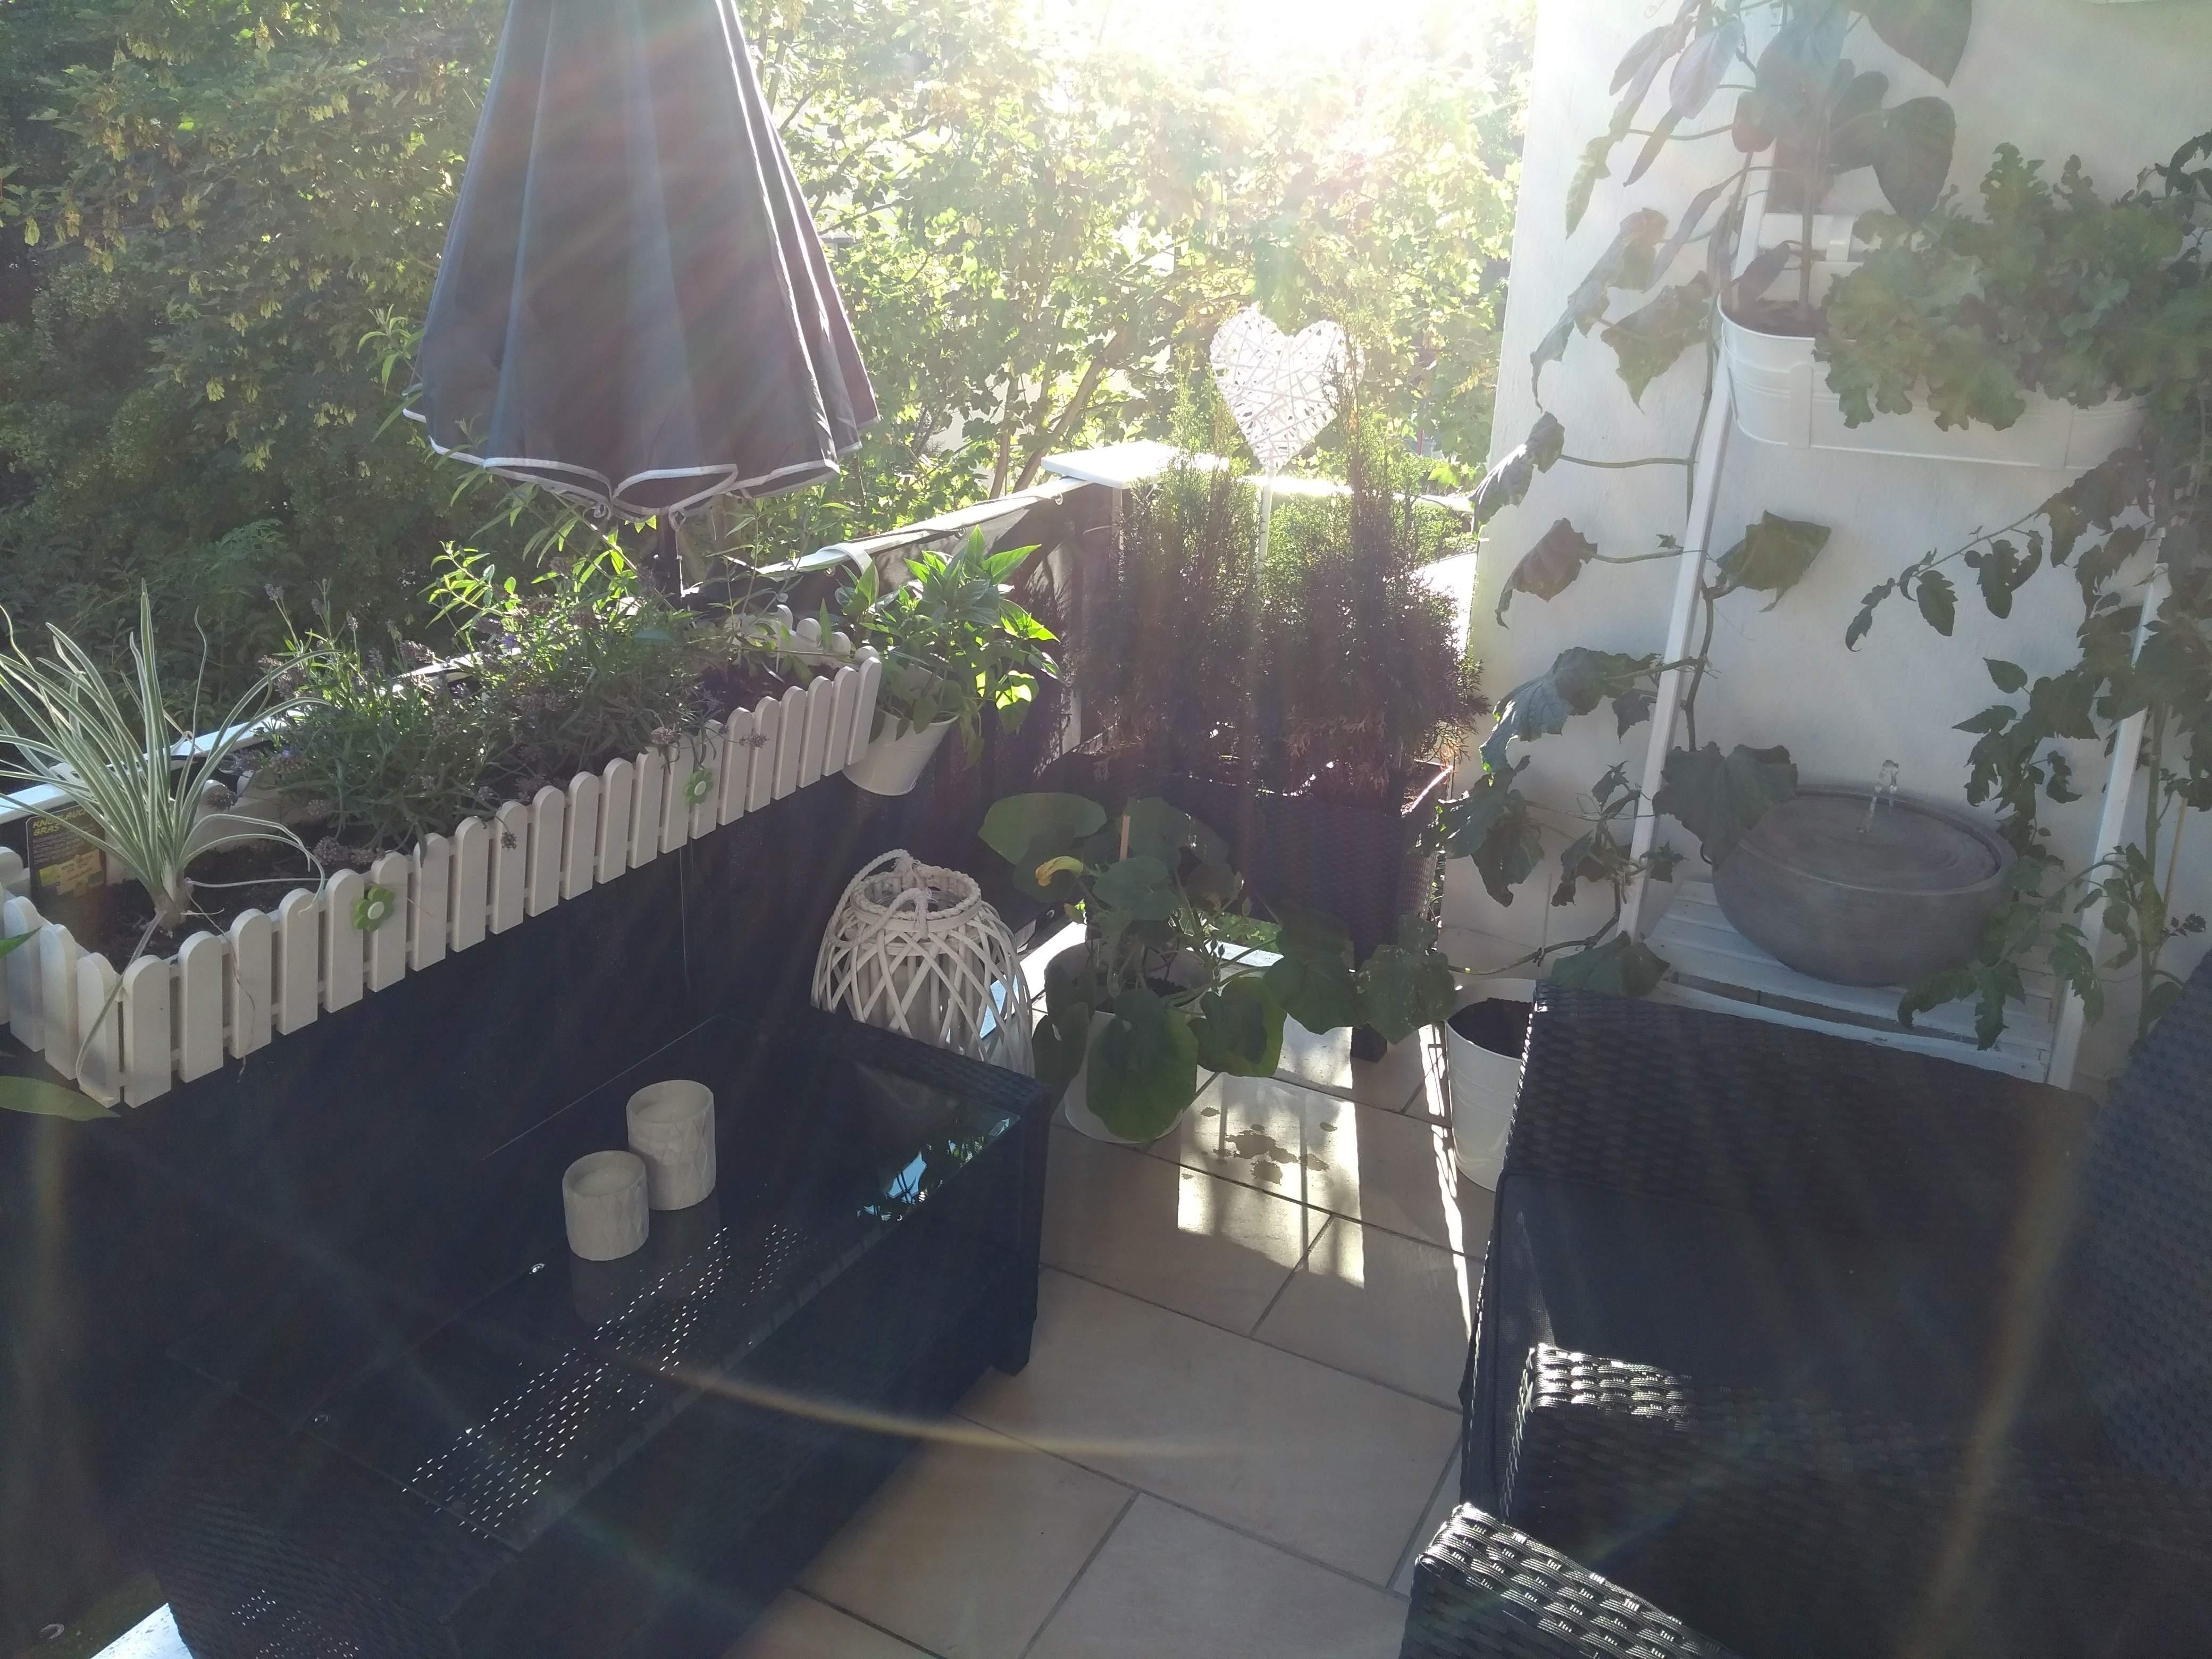 Unsere kleine grüne Oase im letzten Jahr #livingchallenge #plantlover #kleinaberfein #relax #balkon